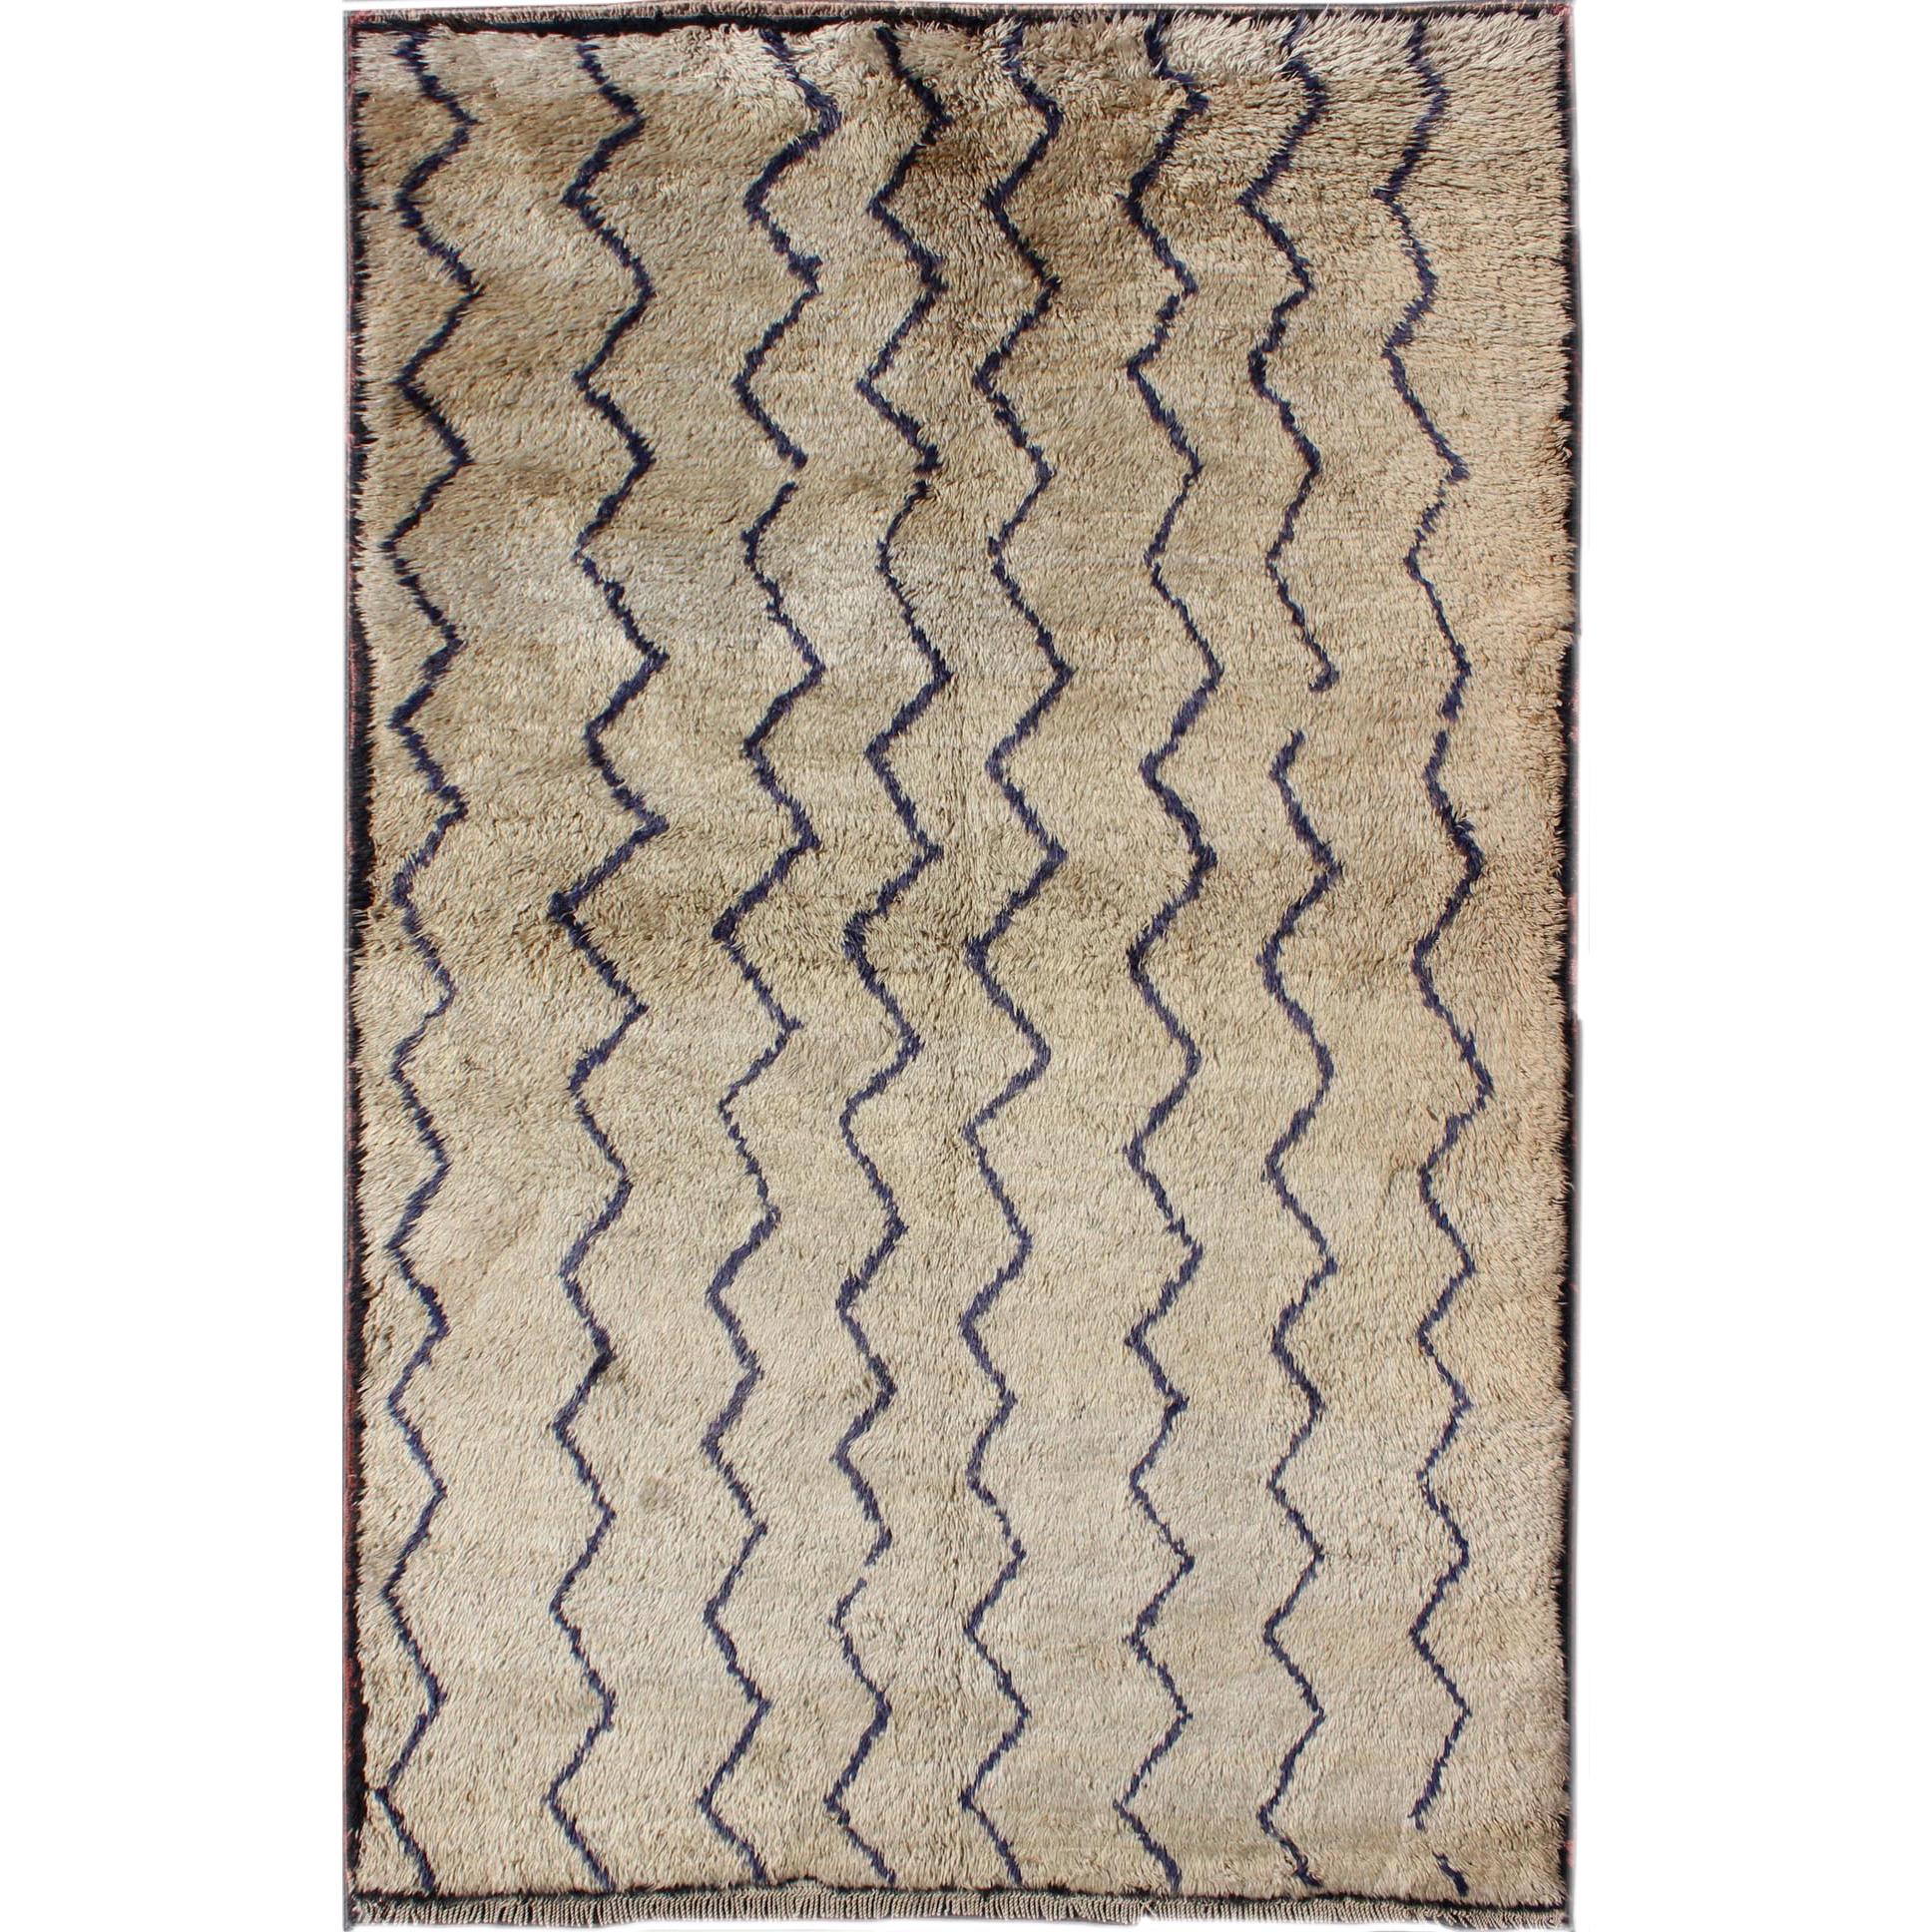 Tulu Vintage-Teppich mit modernem Design in gebrochenem Taupe und dunkelblauen Linien